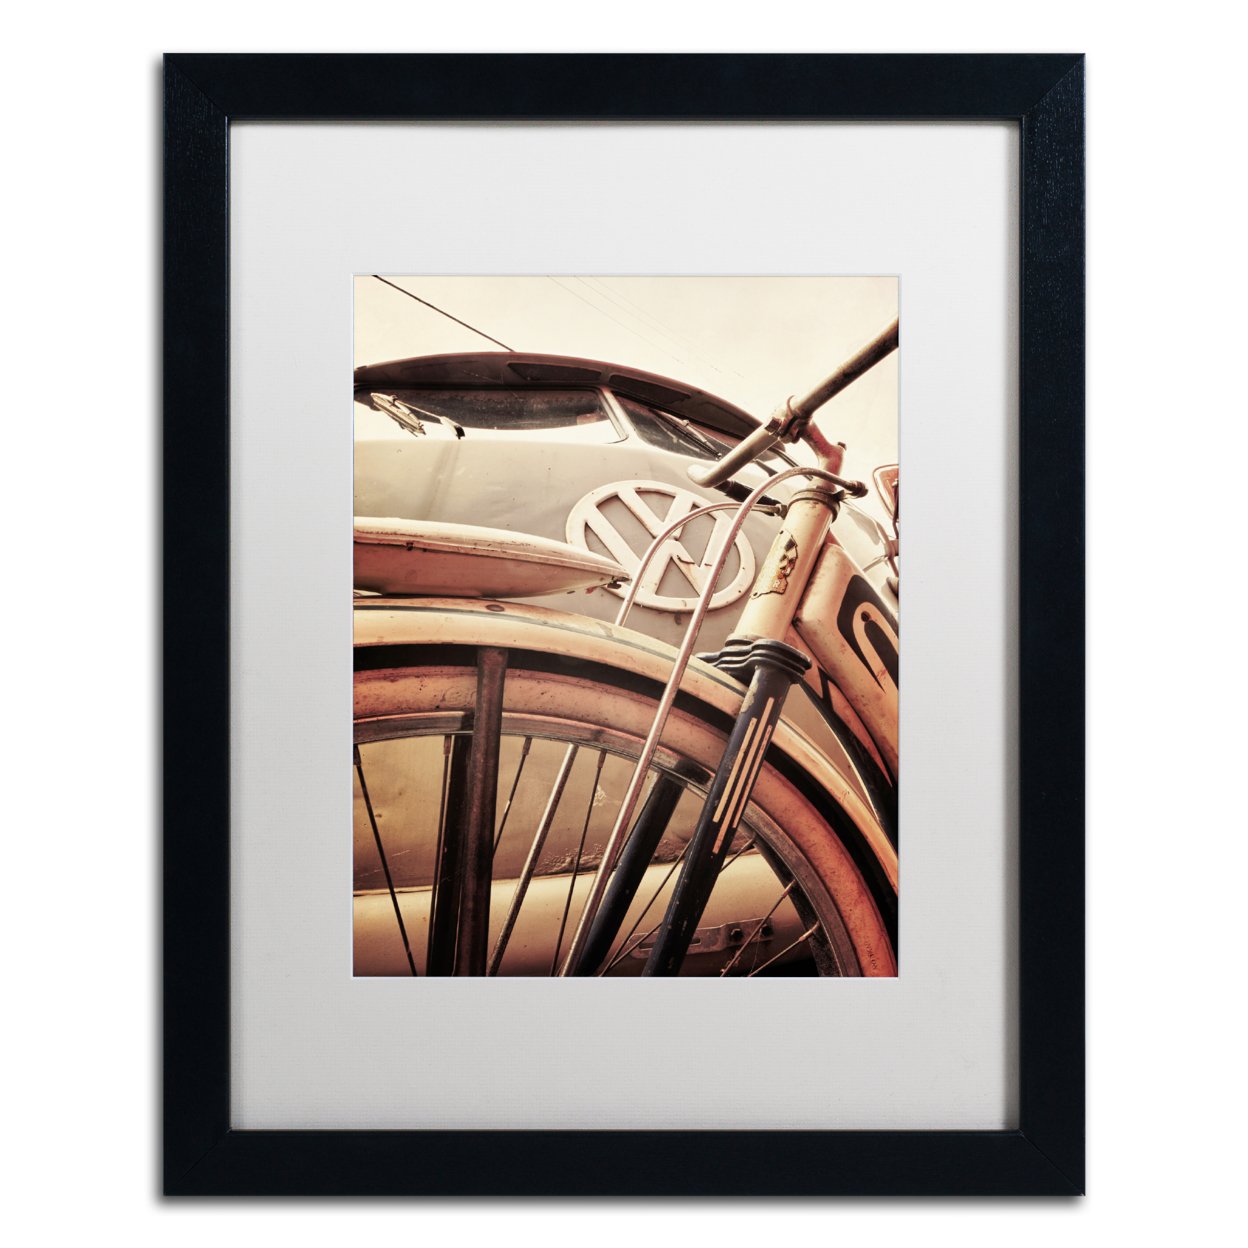 Jason Shaffer 'VW' Black Wooden Framed Art 18 X 22 Inches